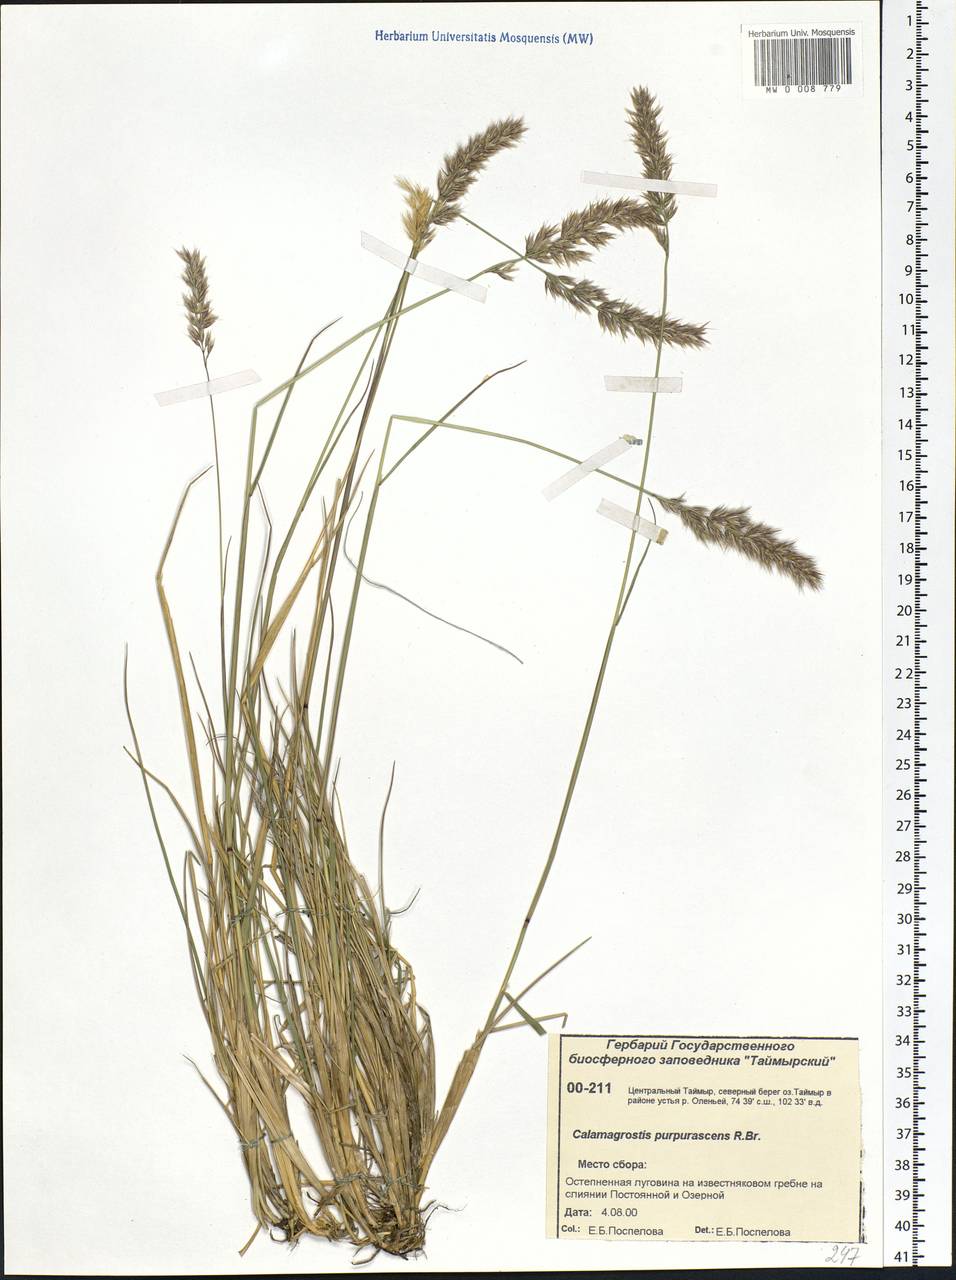 Calamagrostis purpurascens R.Br., Siberia, Central Siberia (S3) (Russia)